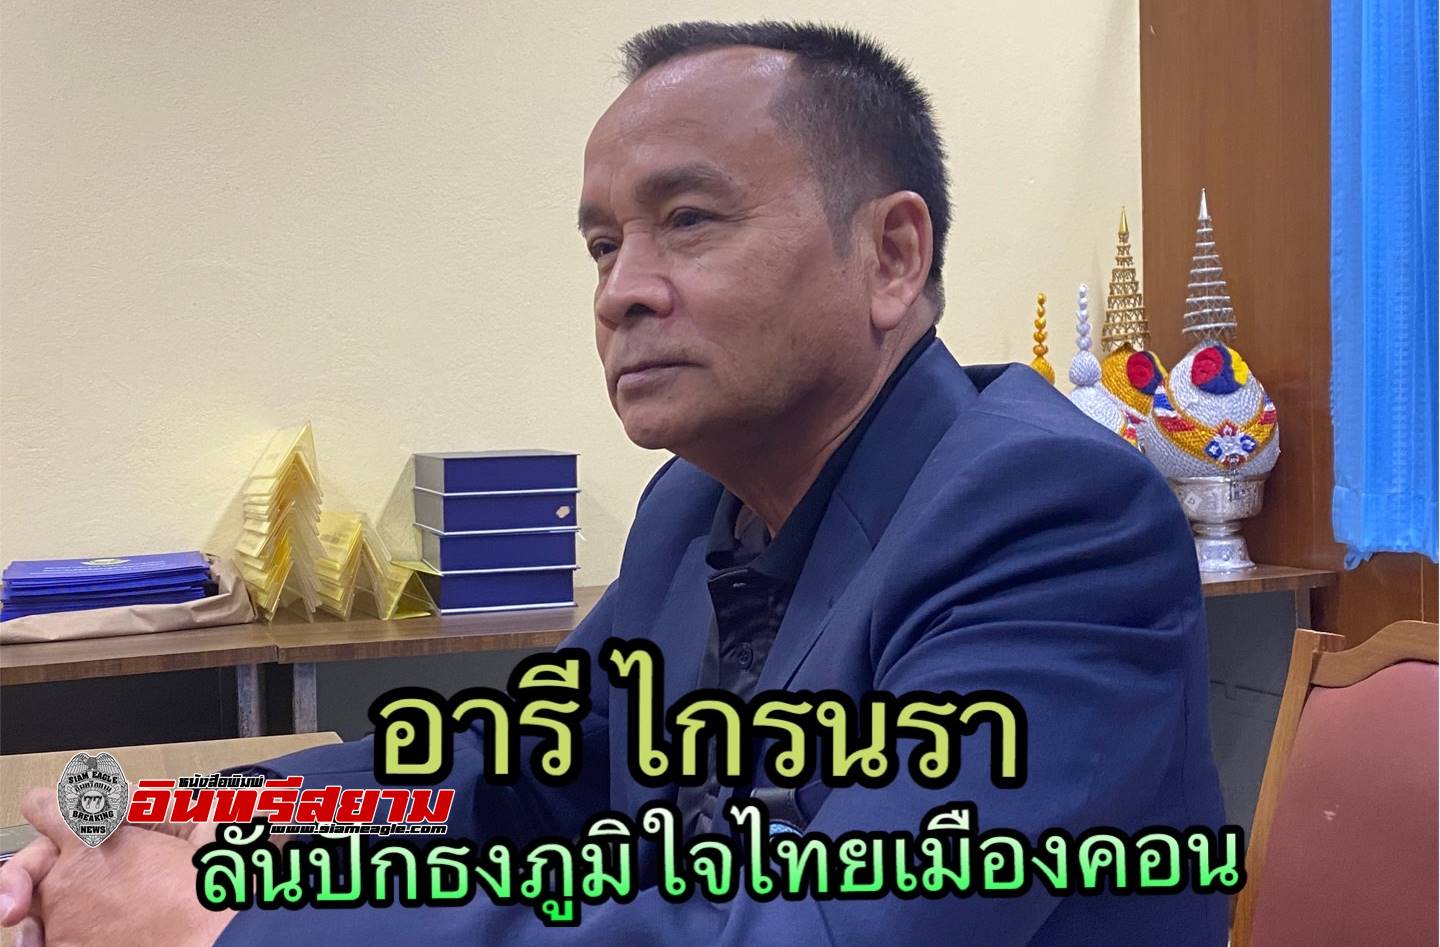 เปิดใจ “อารี ไกรนรา” “พรรคภูมิใจไทย ตอบโจทย์คนใต้ พูดแล้วทำ มั่นใจปักธงเมืองคอนได้”